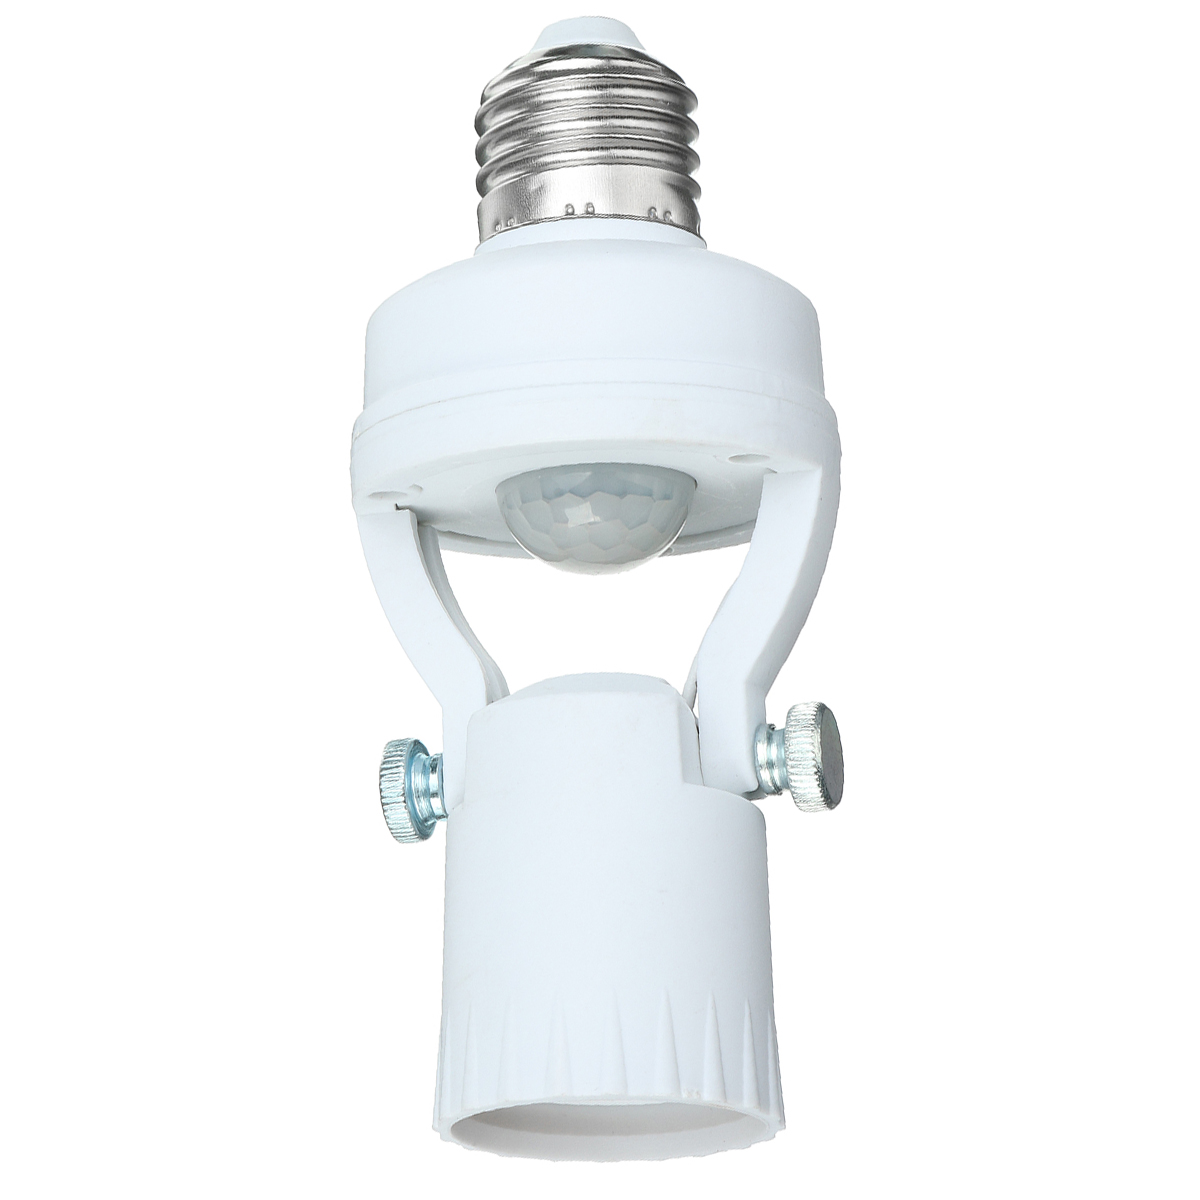 110-240V-Infrared-Motion-Light-Sensor-Intelligent-Bulb-Lamp-Base-Switch-E26E27-1795583-7